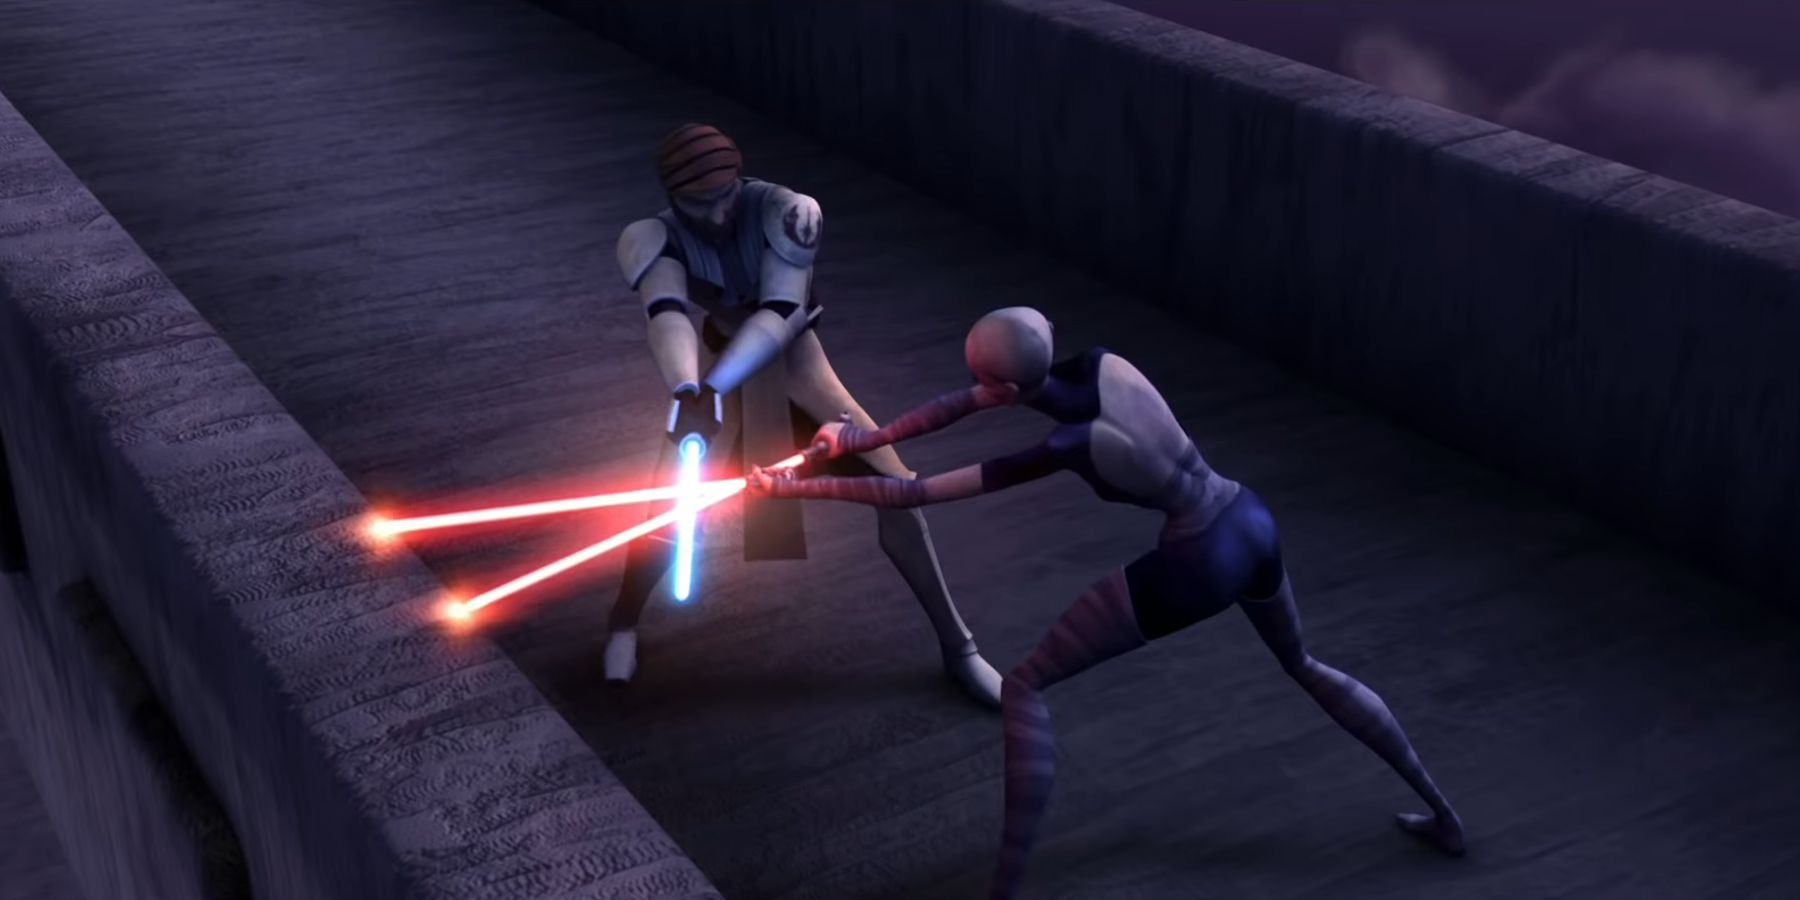 Obi-Wan Kenobi battling Asajj Ventress on a bridge in Star Wars The Clone Wars